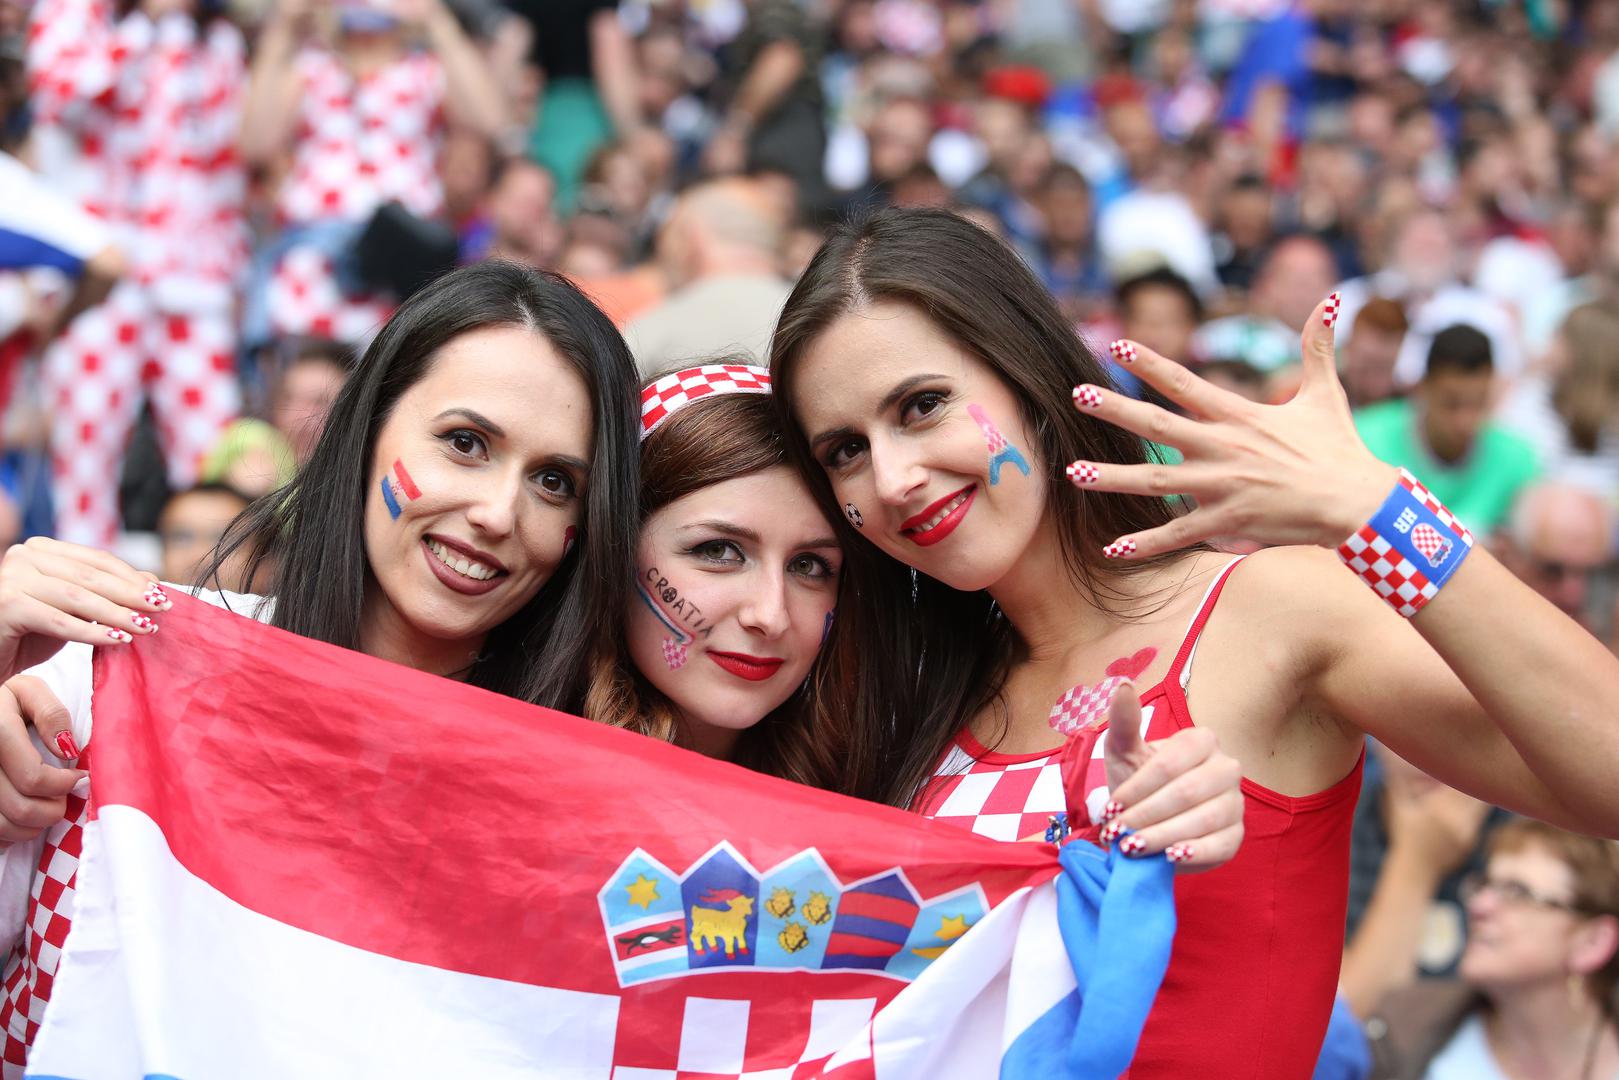 Još nije poznato koliko je Hrvata uspjelo kupiti karte za Mundijal, gdje će bodriti našu nogometnu reprezentaciju